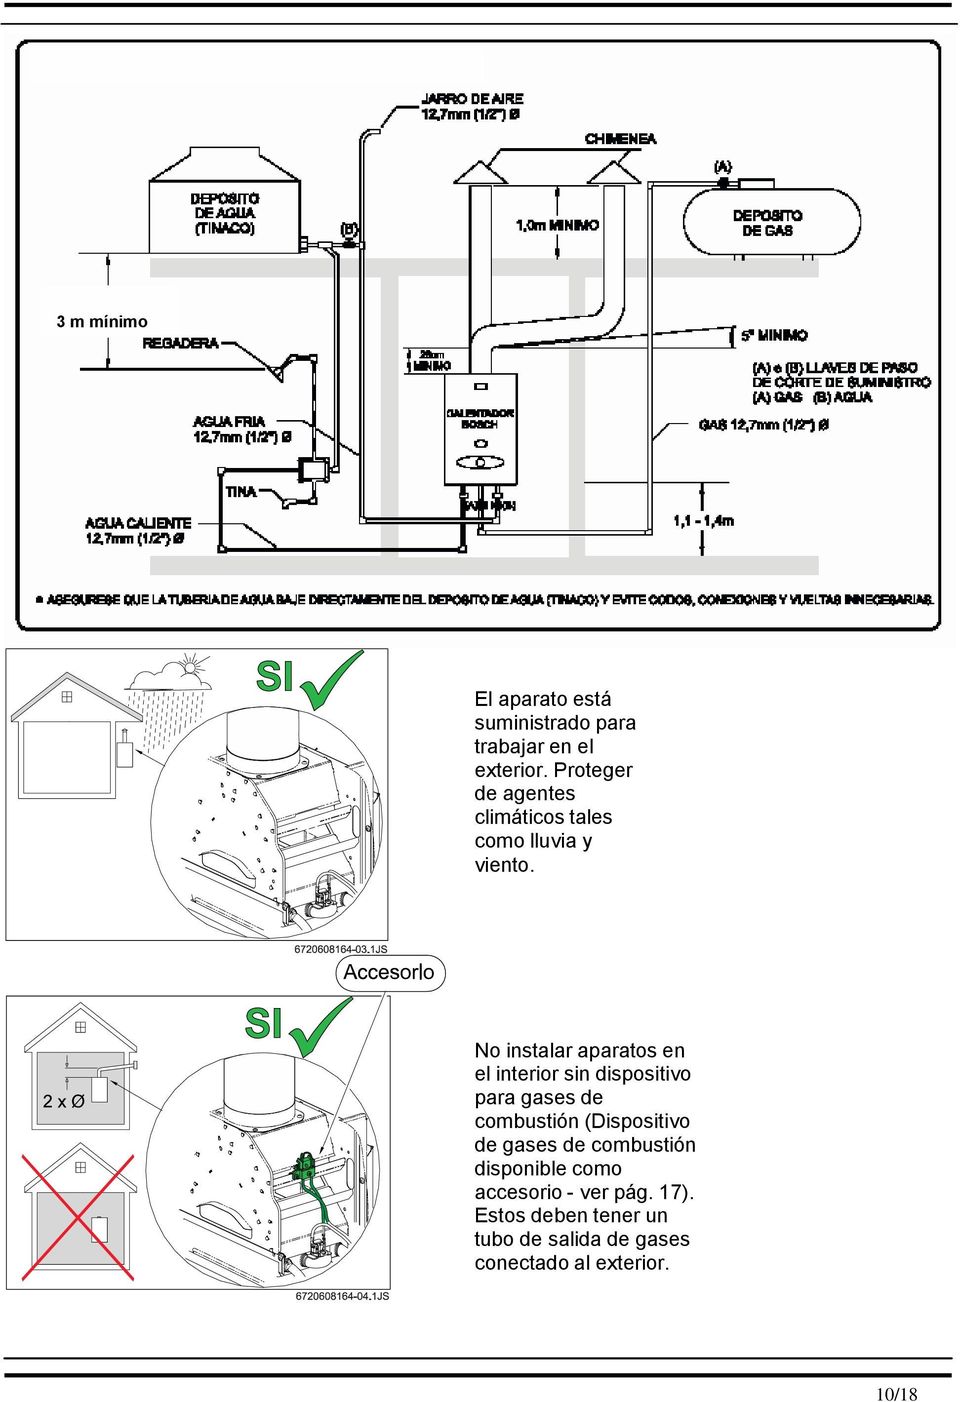 No instalar aparatos en el interior sin dispositivo para gases de combustión (Dispositivo